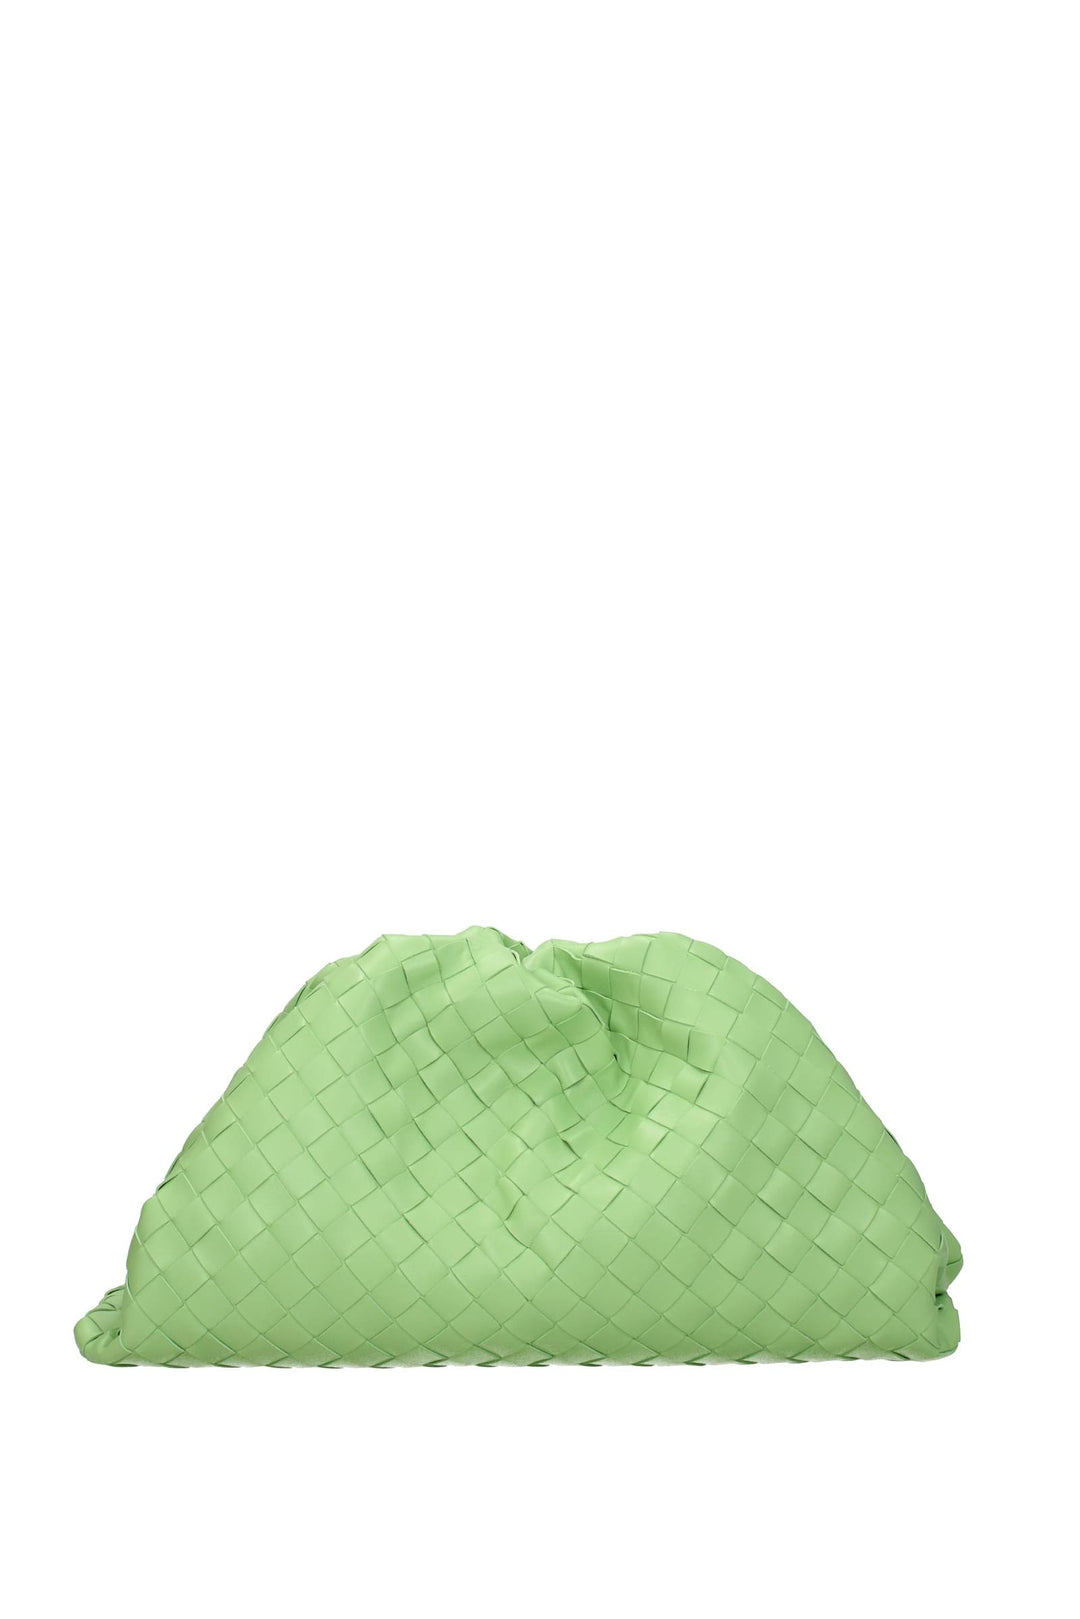 Pochette Pelle Verde Pistacchio - Bottega Veneta - Donna